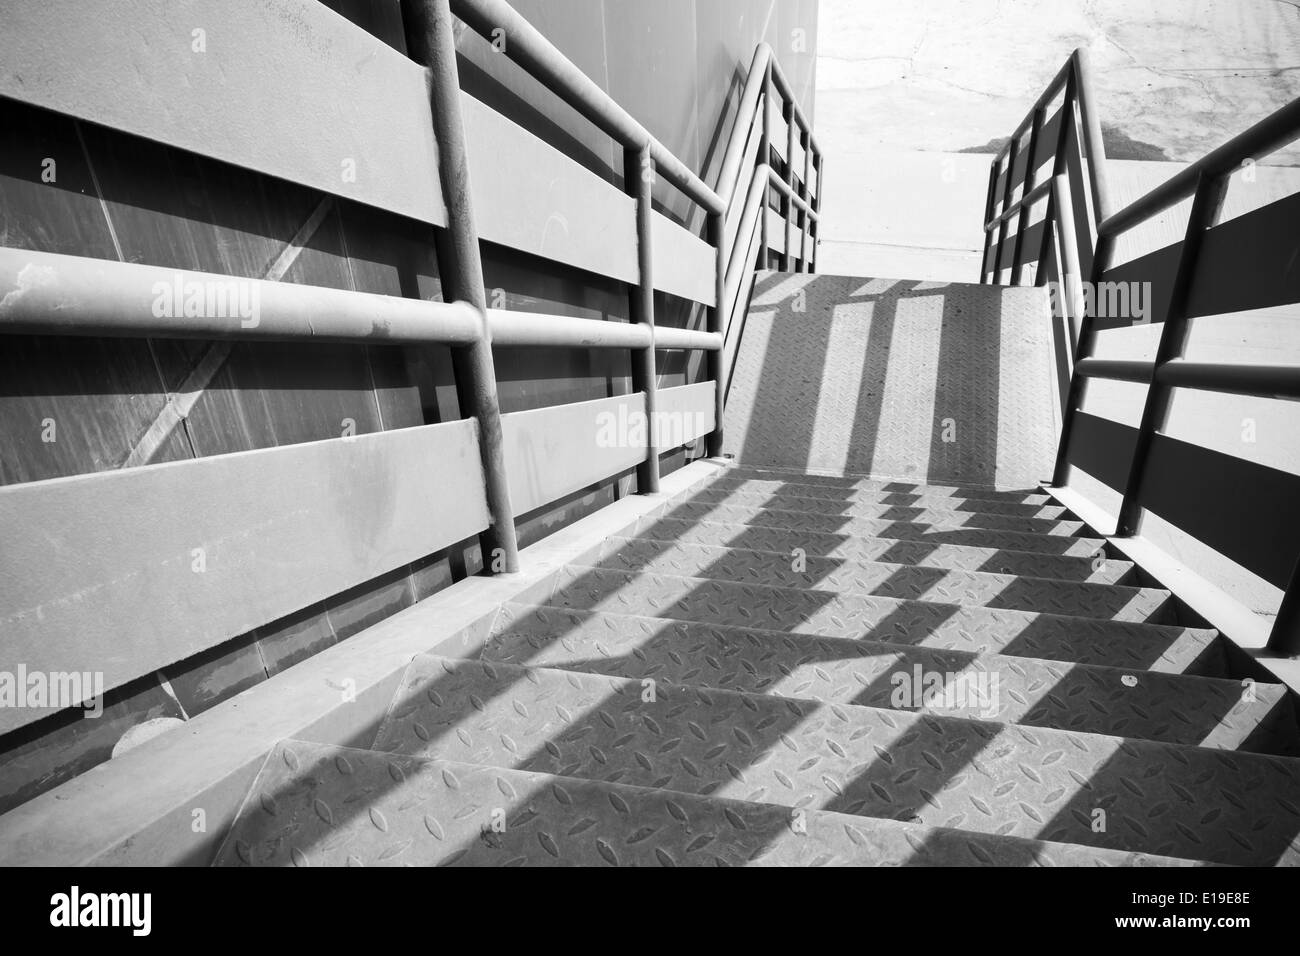 Escalera metálica industrial perspectiva con bonito patrón de sombras Foto de stock